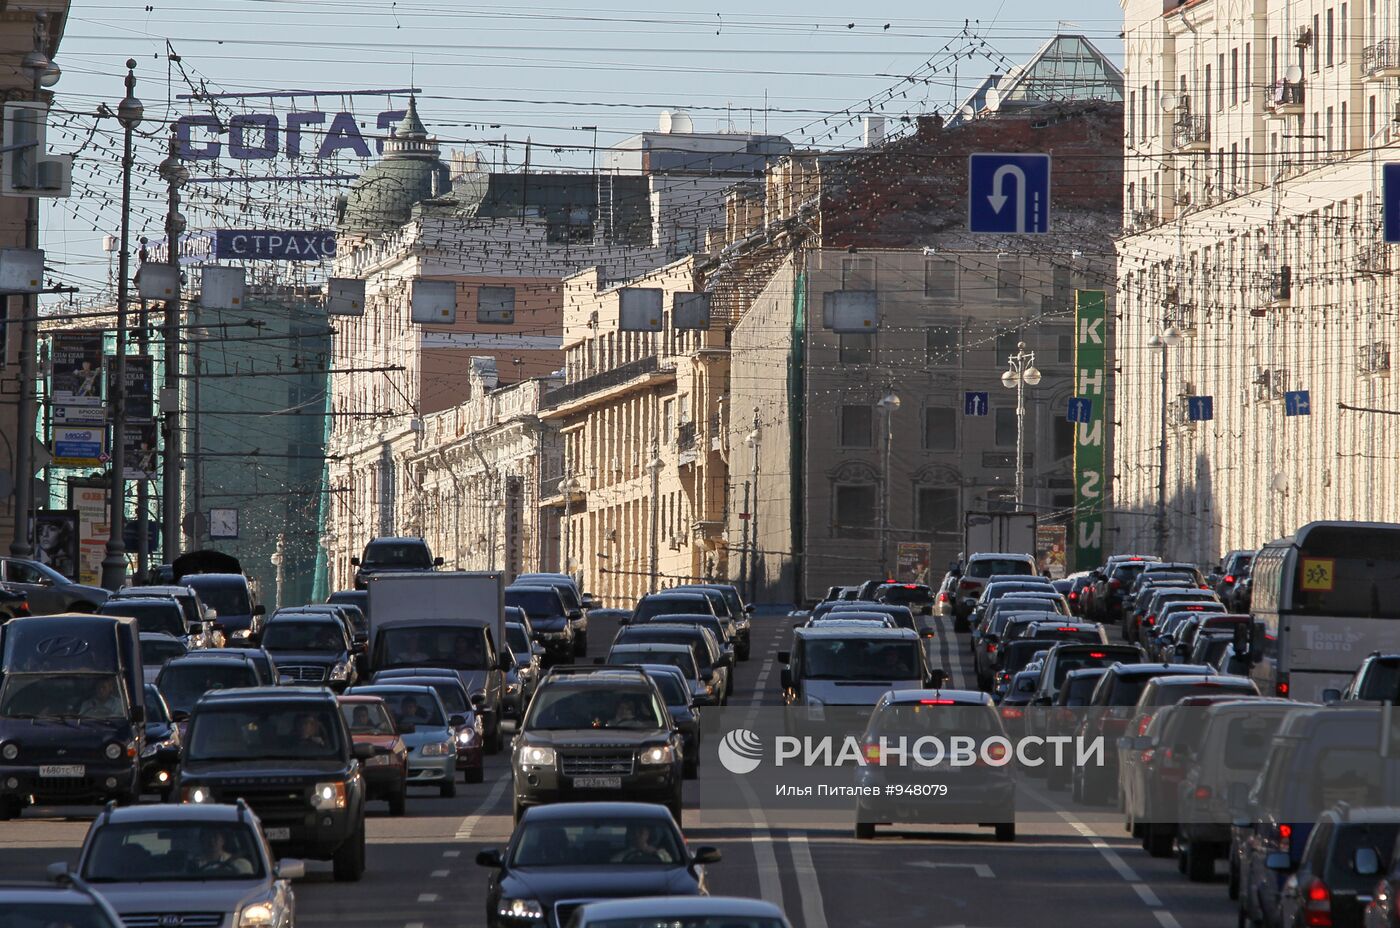 Рекламные перетяжки демонтированы на улицах Москвы